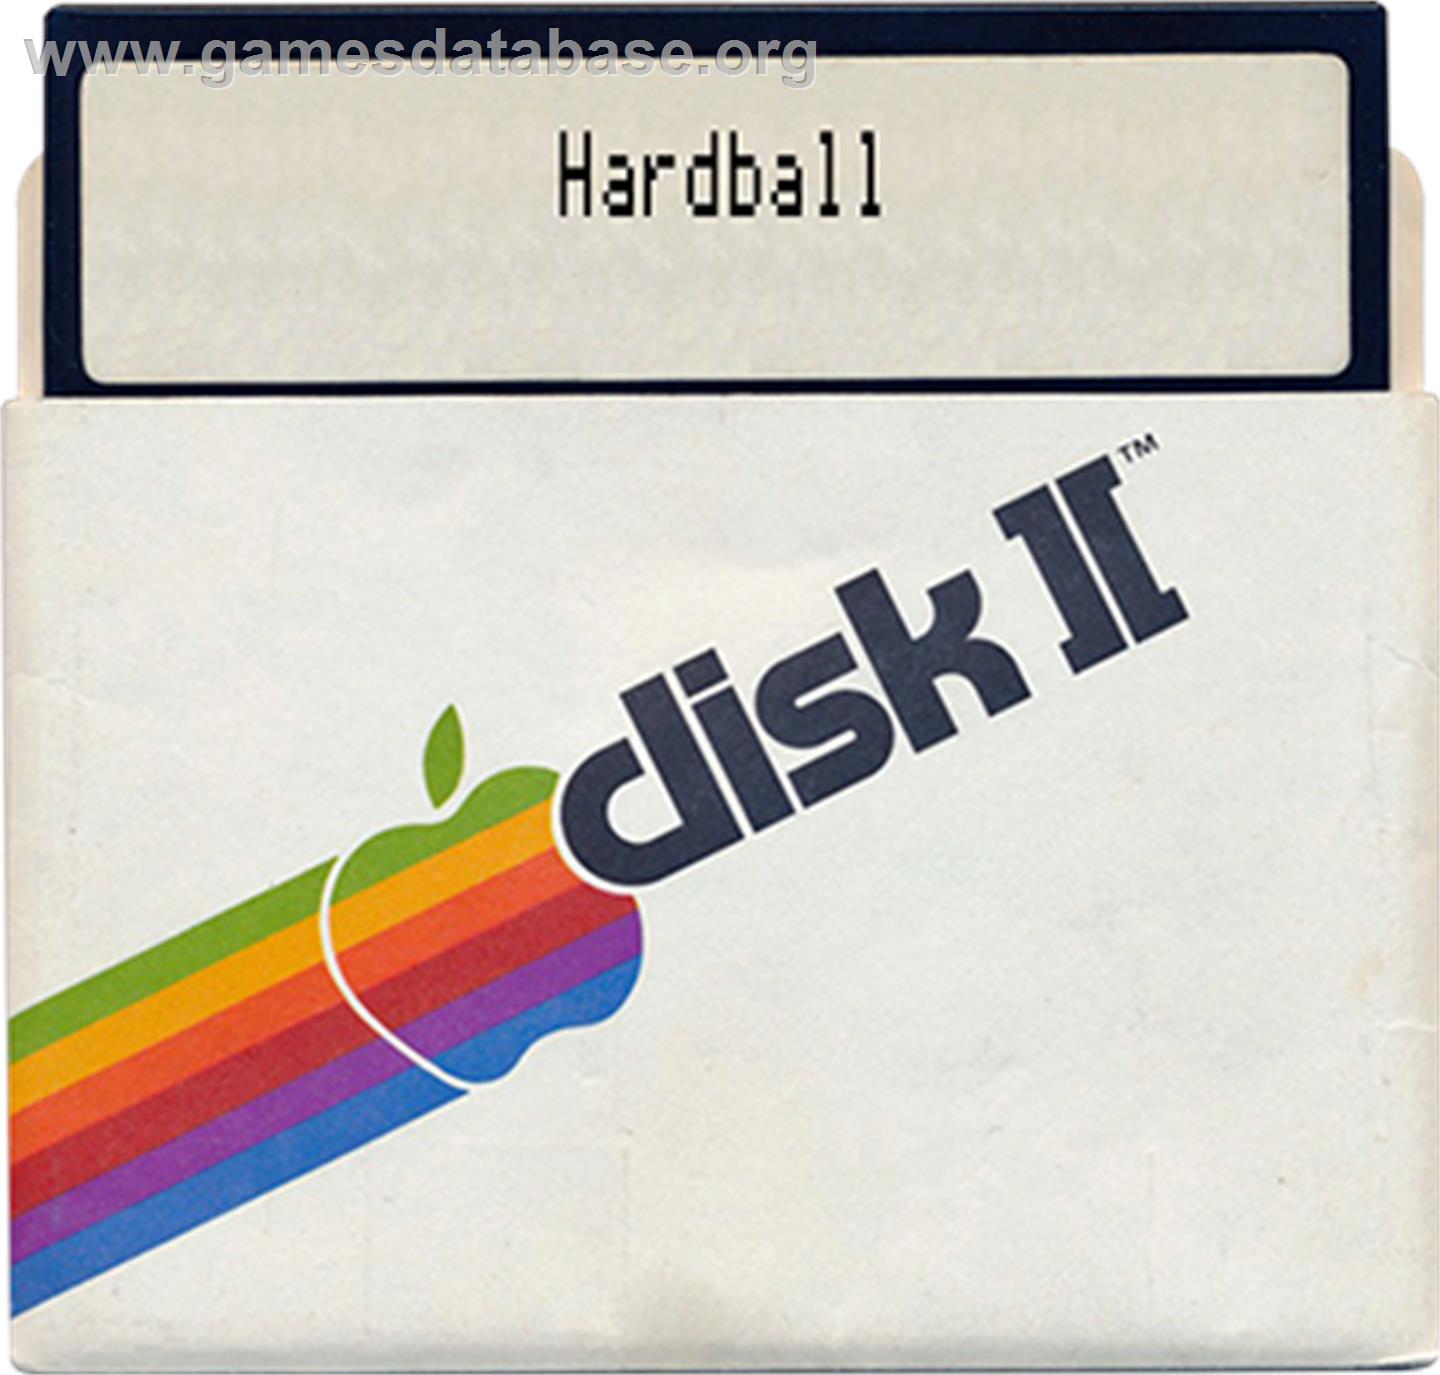 HardBall - Apple II - Artwork - Disc